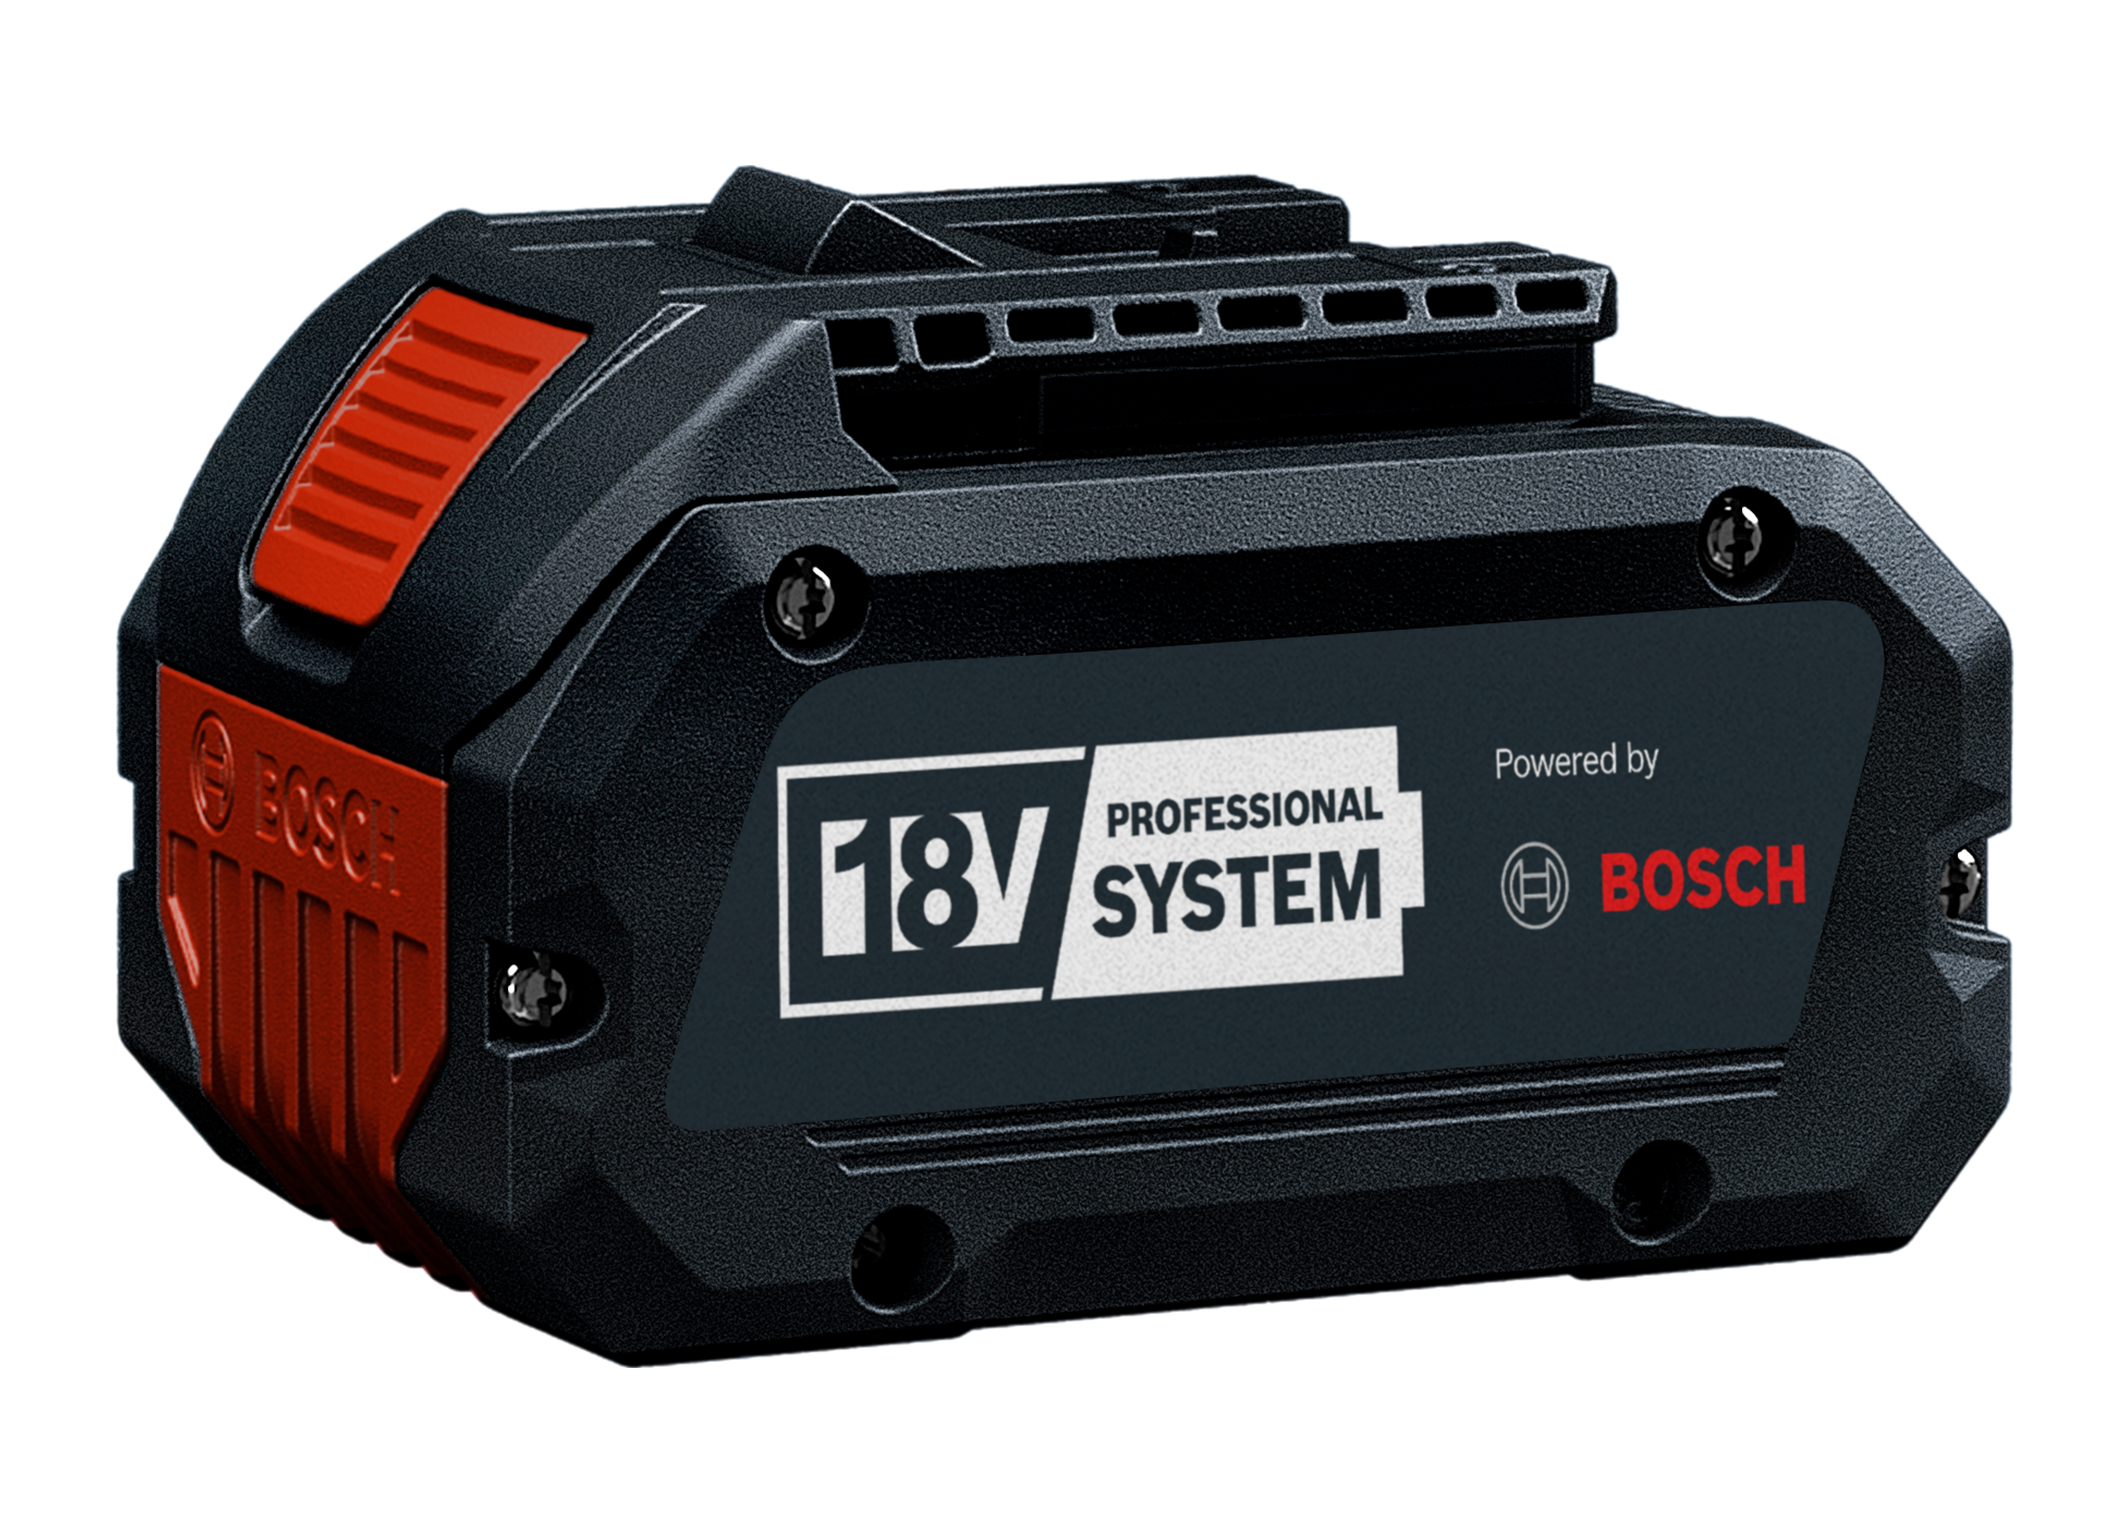 Ušetřete čas, prostor a peníze s jednou baterií pro všechny nástroje: Bosch otevírá profesionální 18V systém pro odborné značky